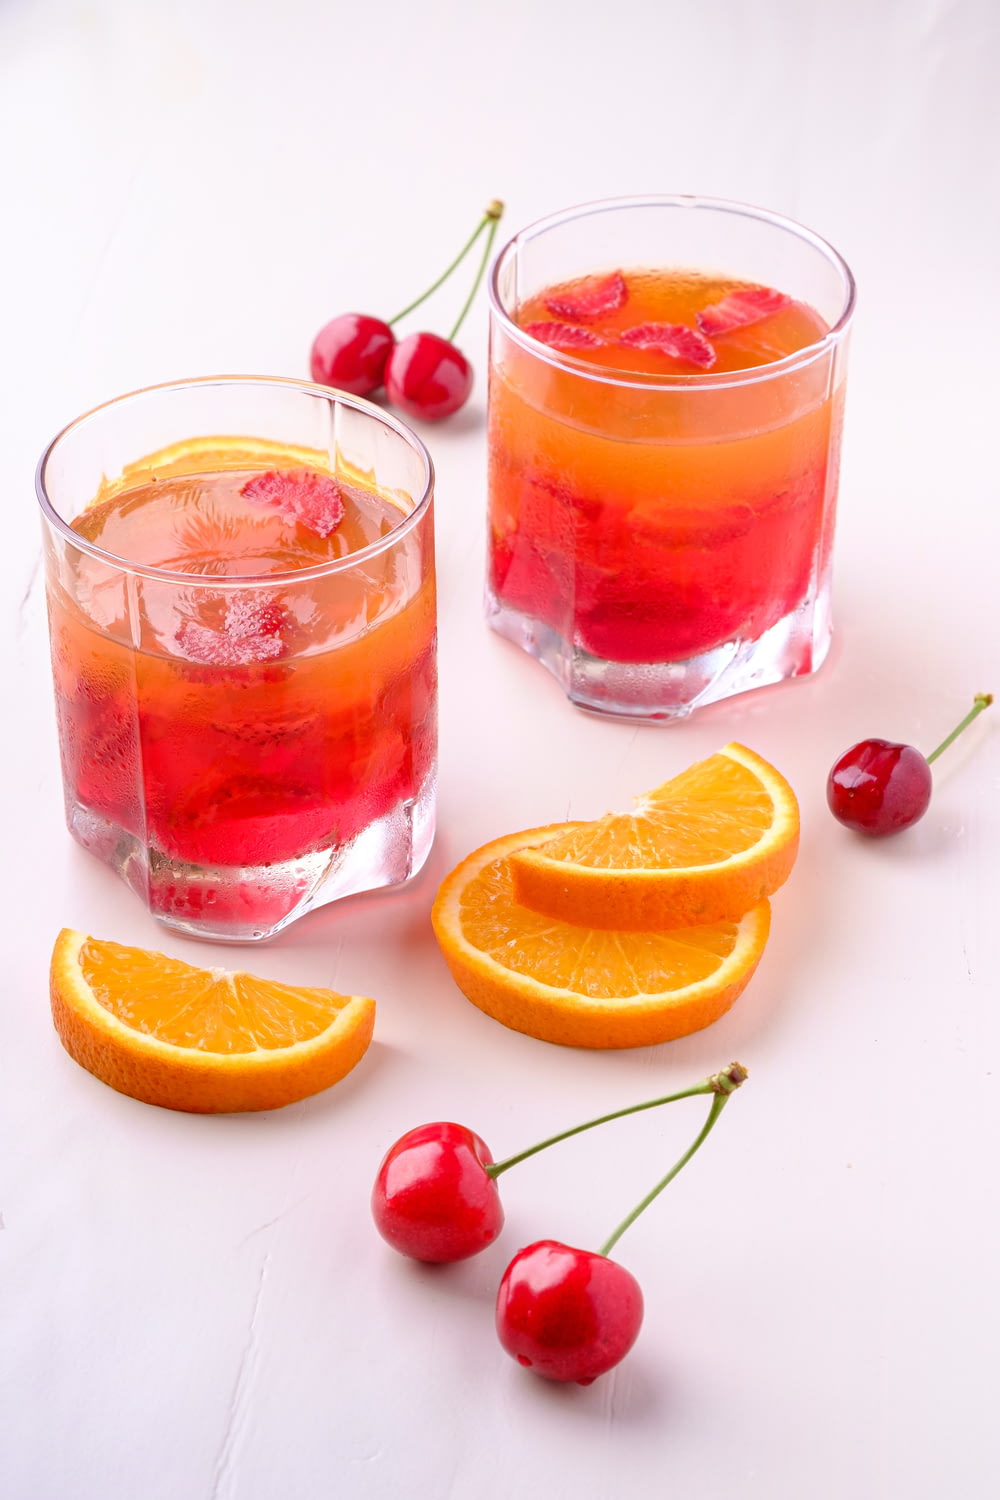 Dos bebidas de naranja y cereza en vasos